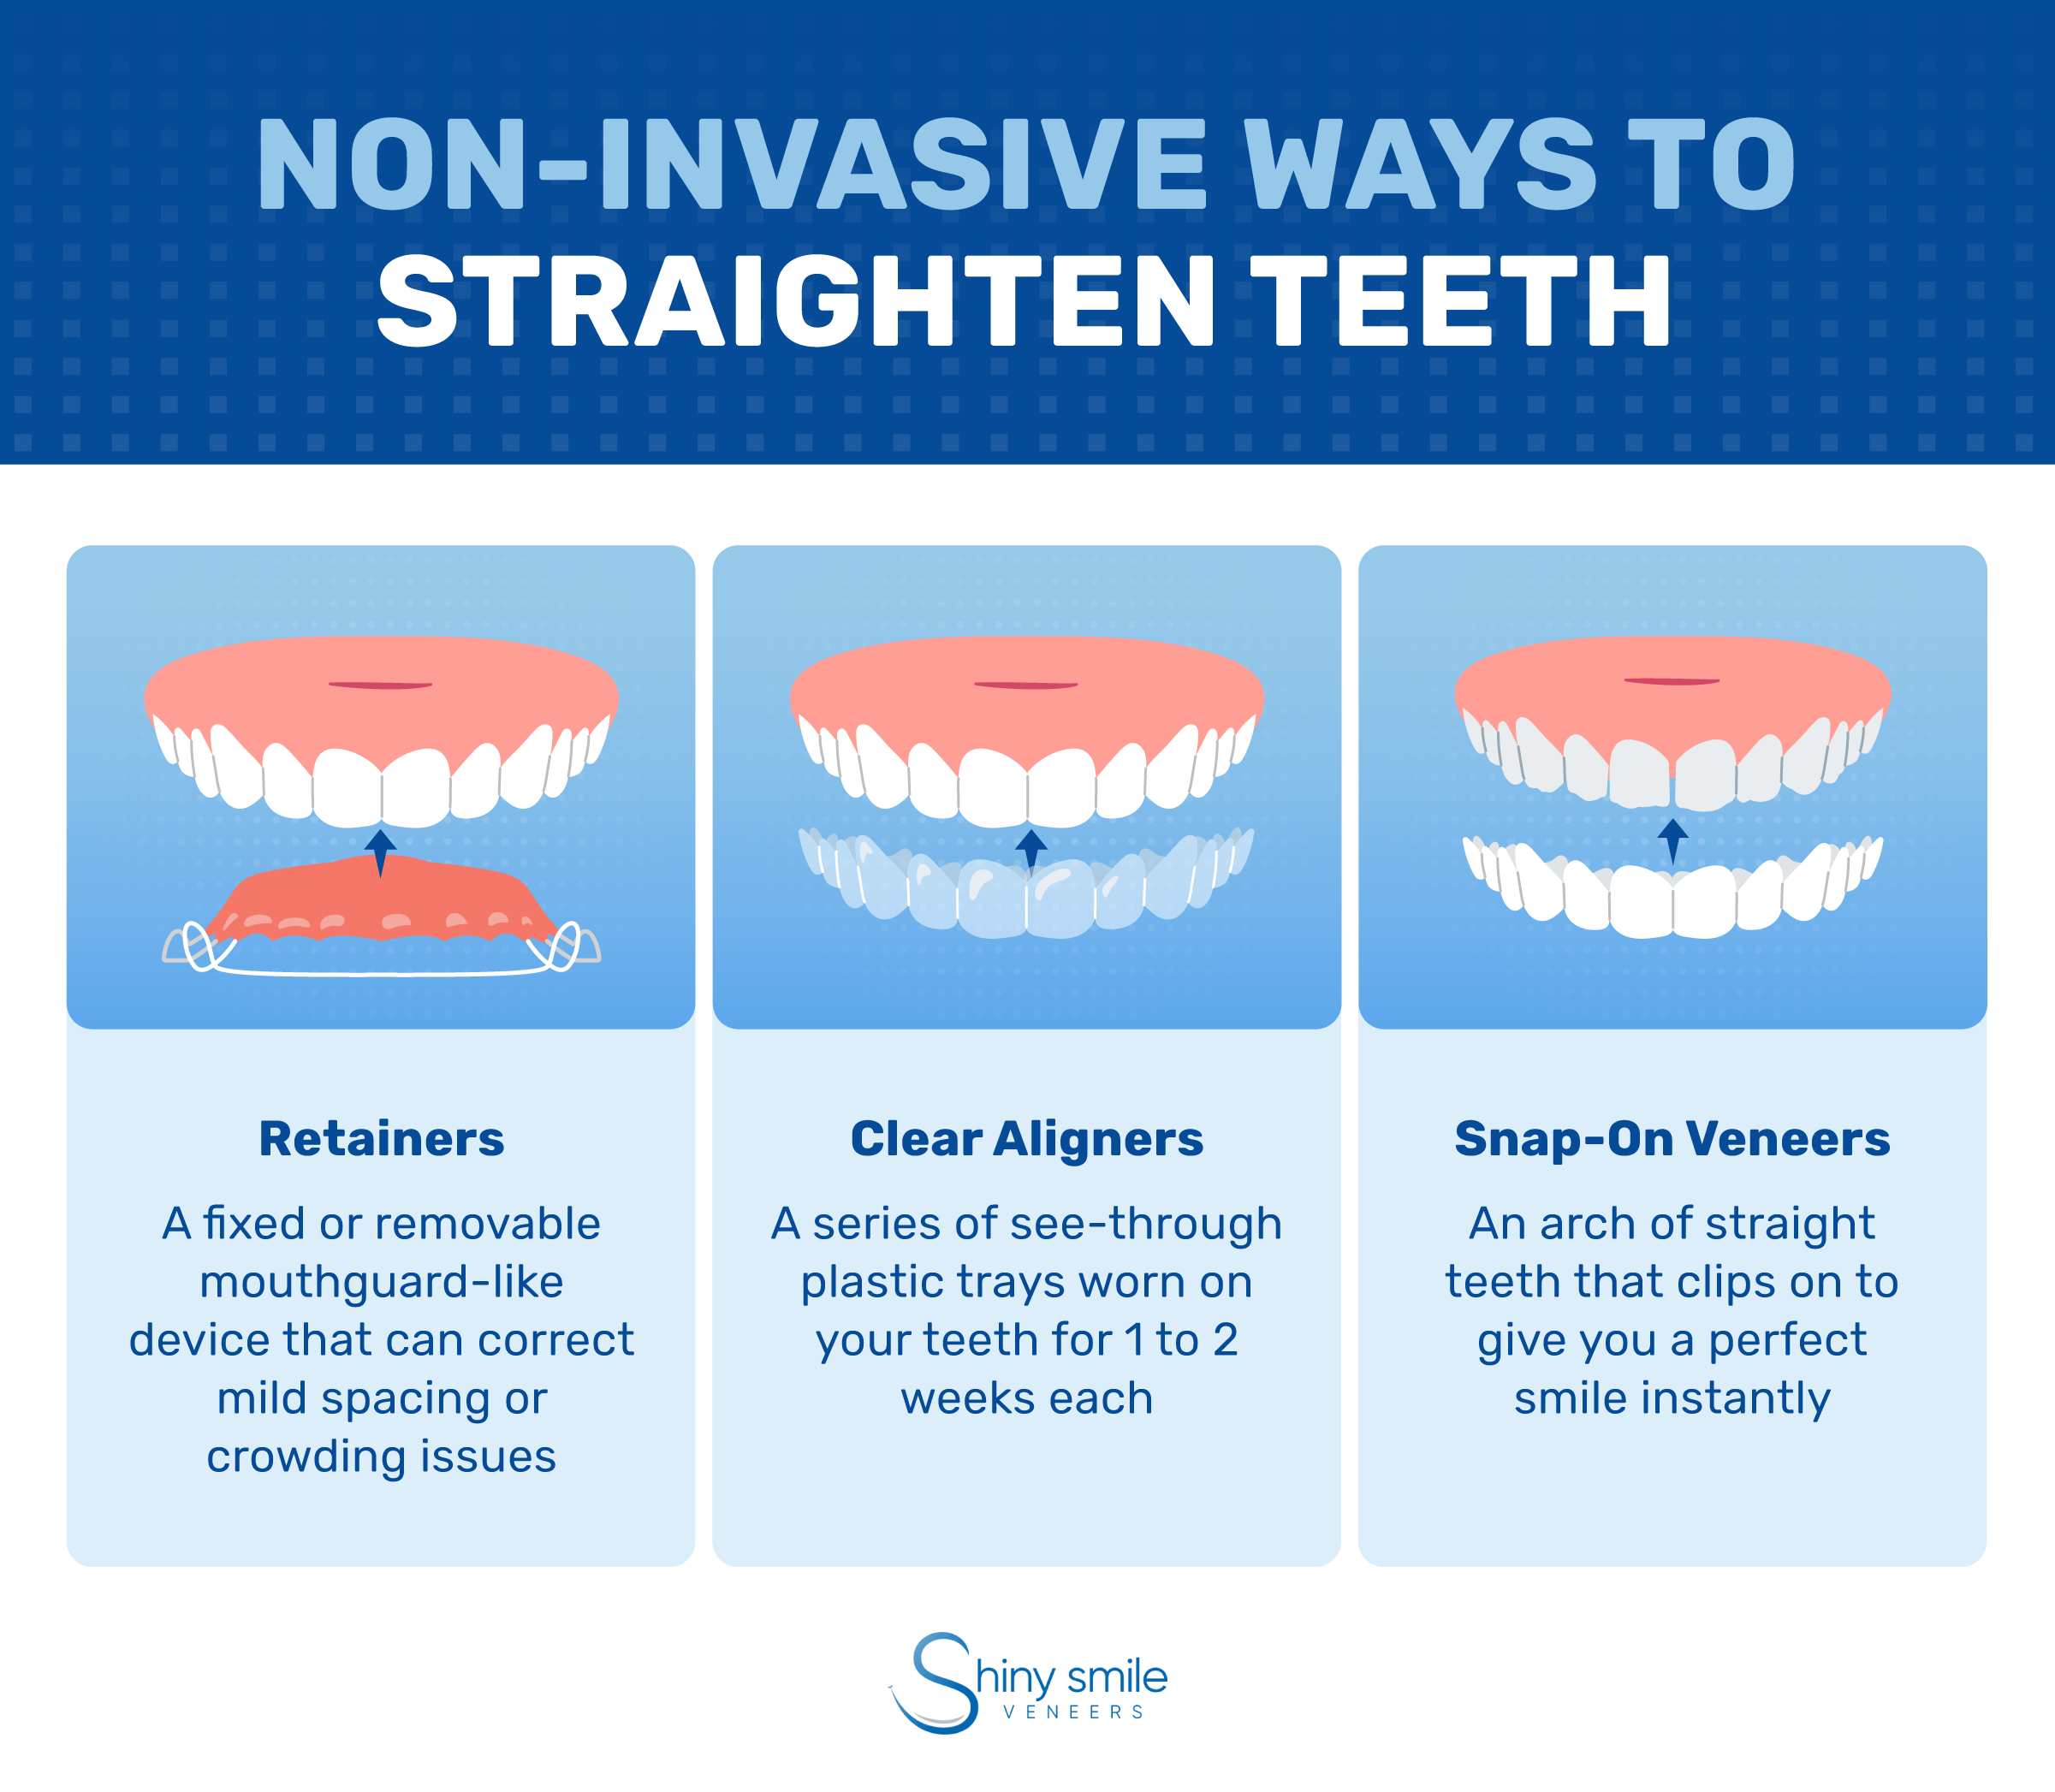 Non-invasive ways to straighten teeth